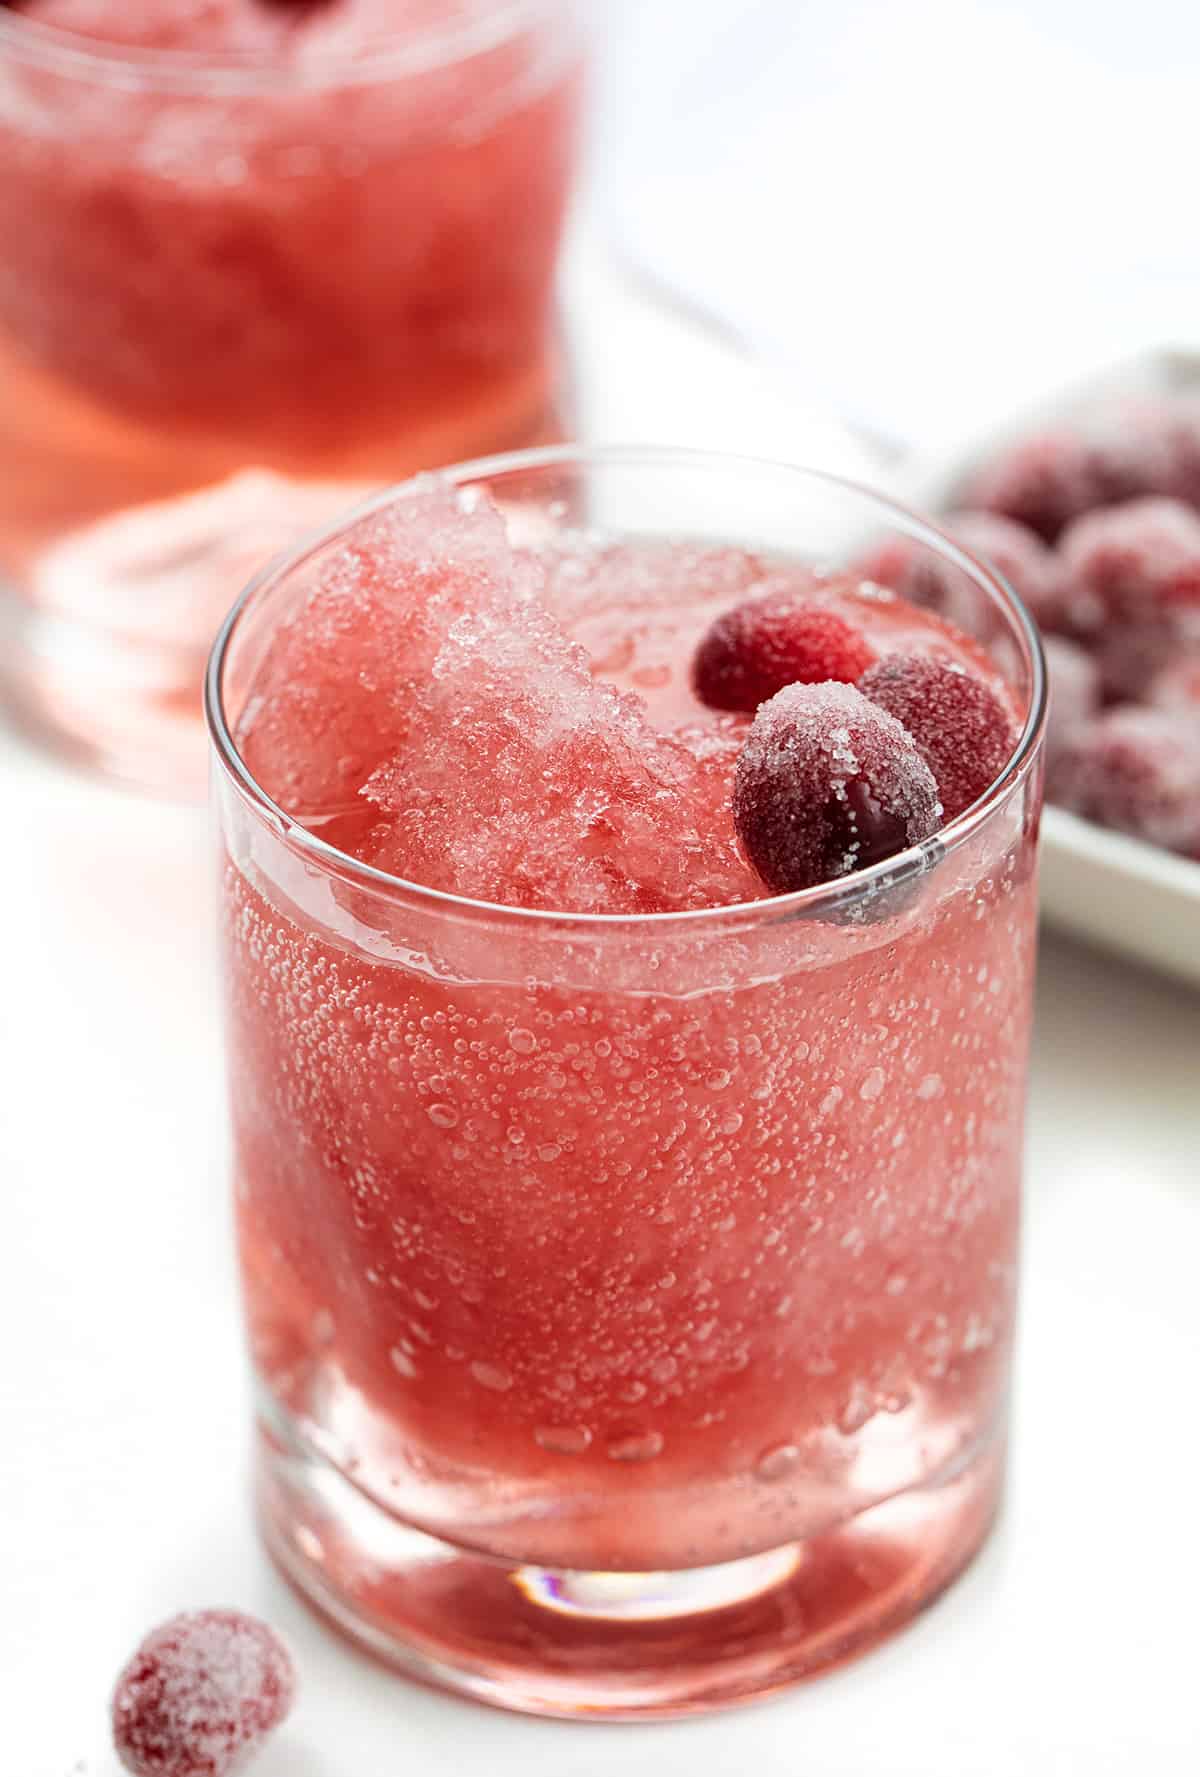 杯蔓越莓泥浆与糖酸果蔓的果实。